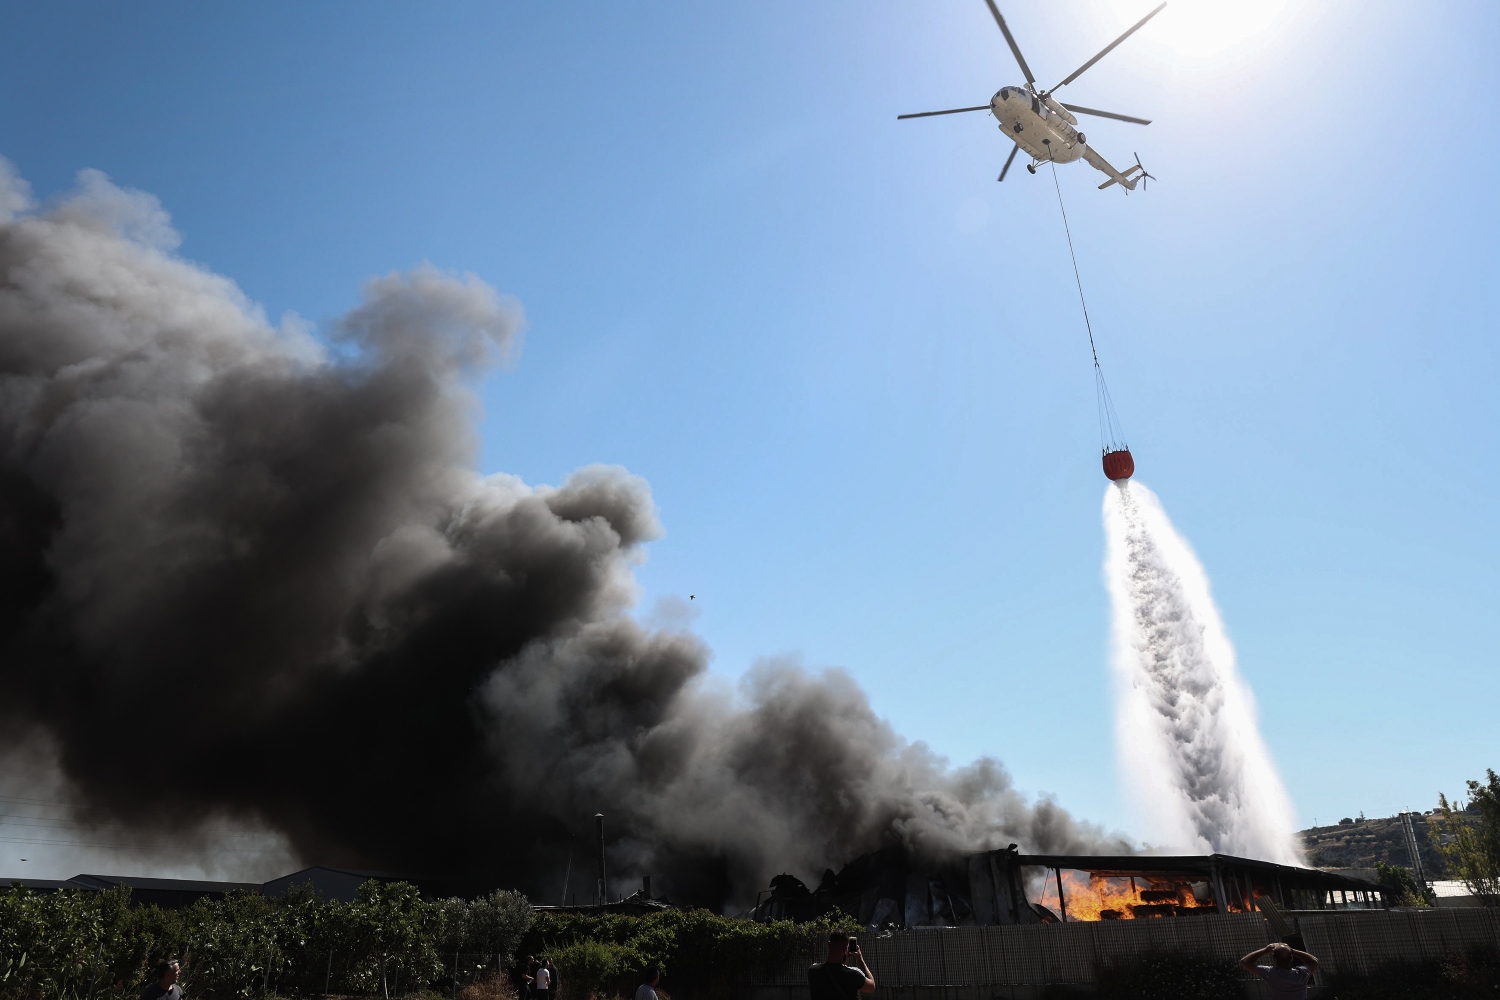 Σε 3 μέτωπα οι φωτιές: Μαίνεται στην Κάρυστο, υπό μερικό έλεγχο σε Παιανία – Καλύτερη εικόνα στην Ηλεία